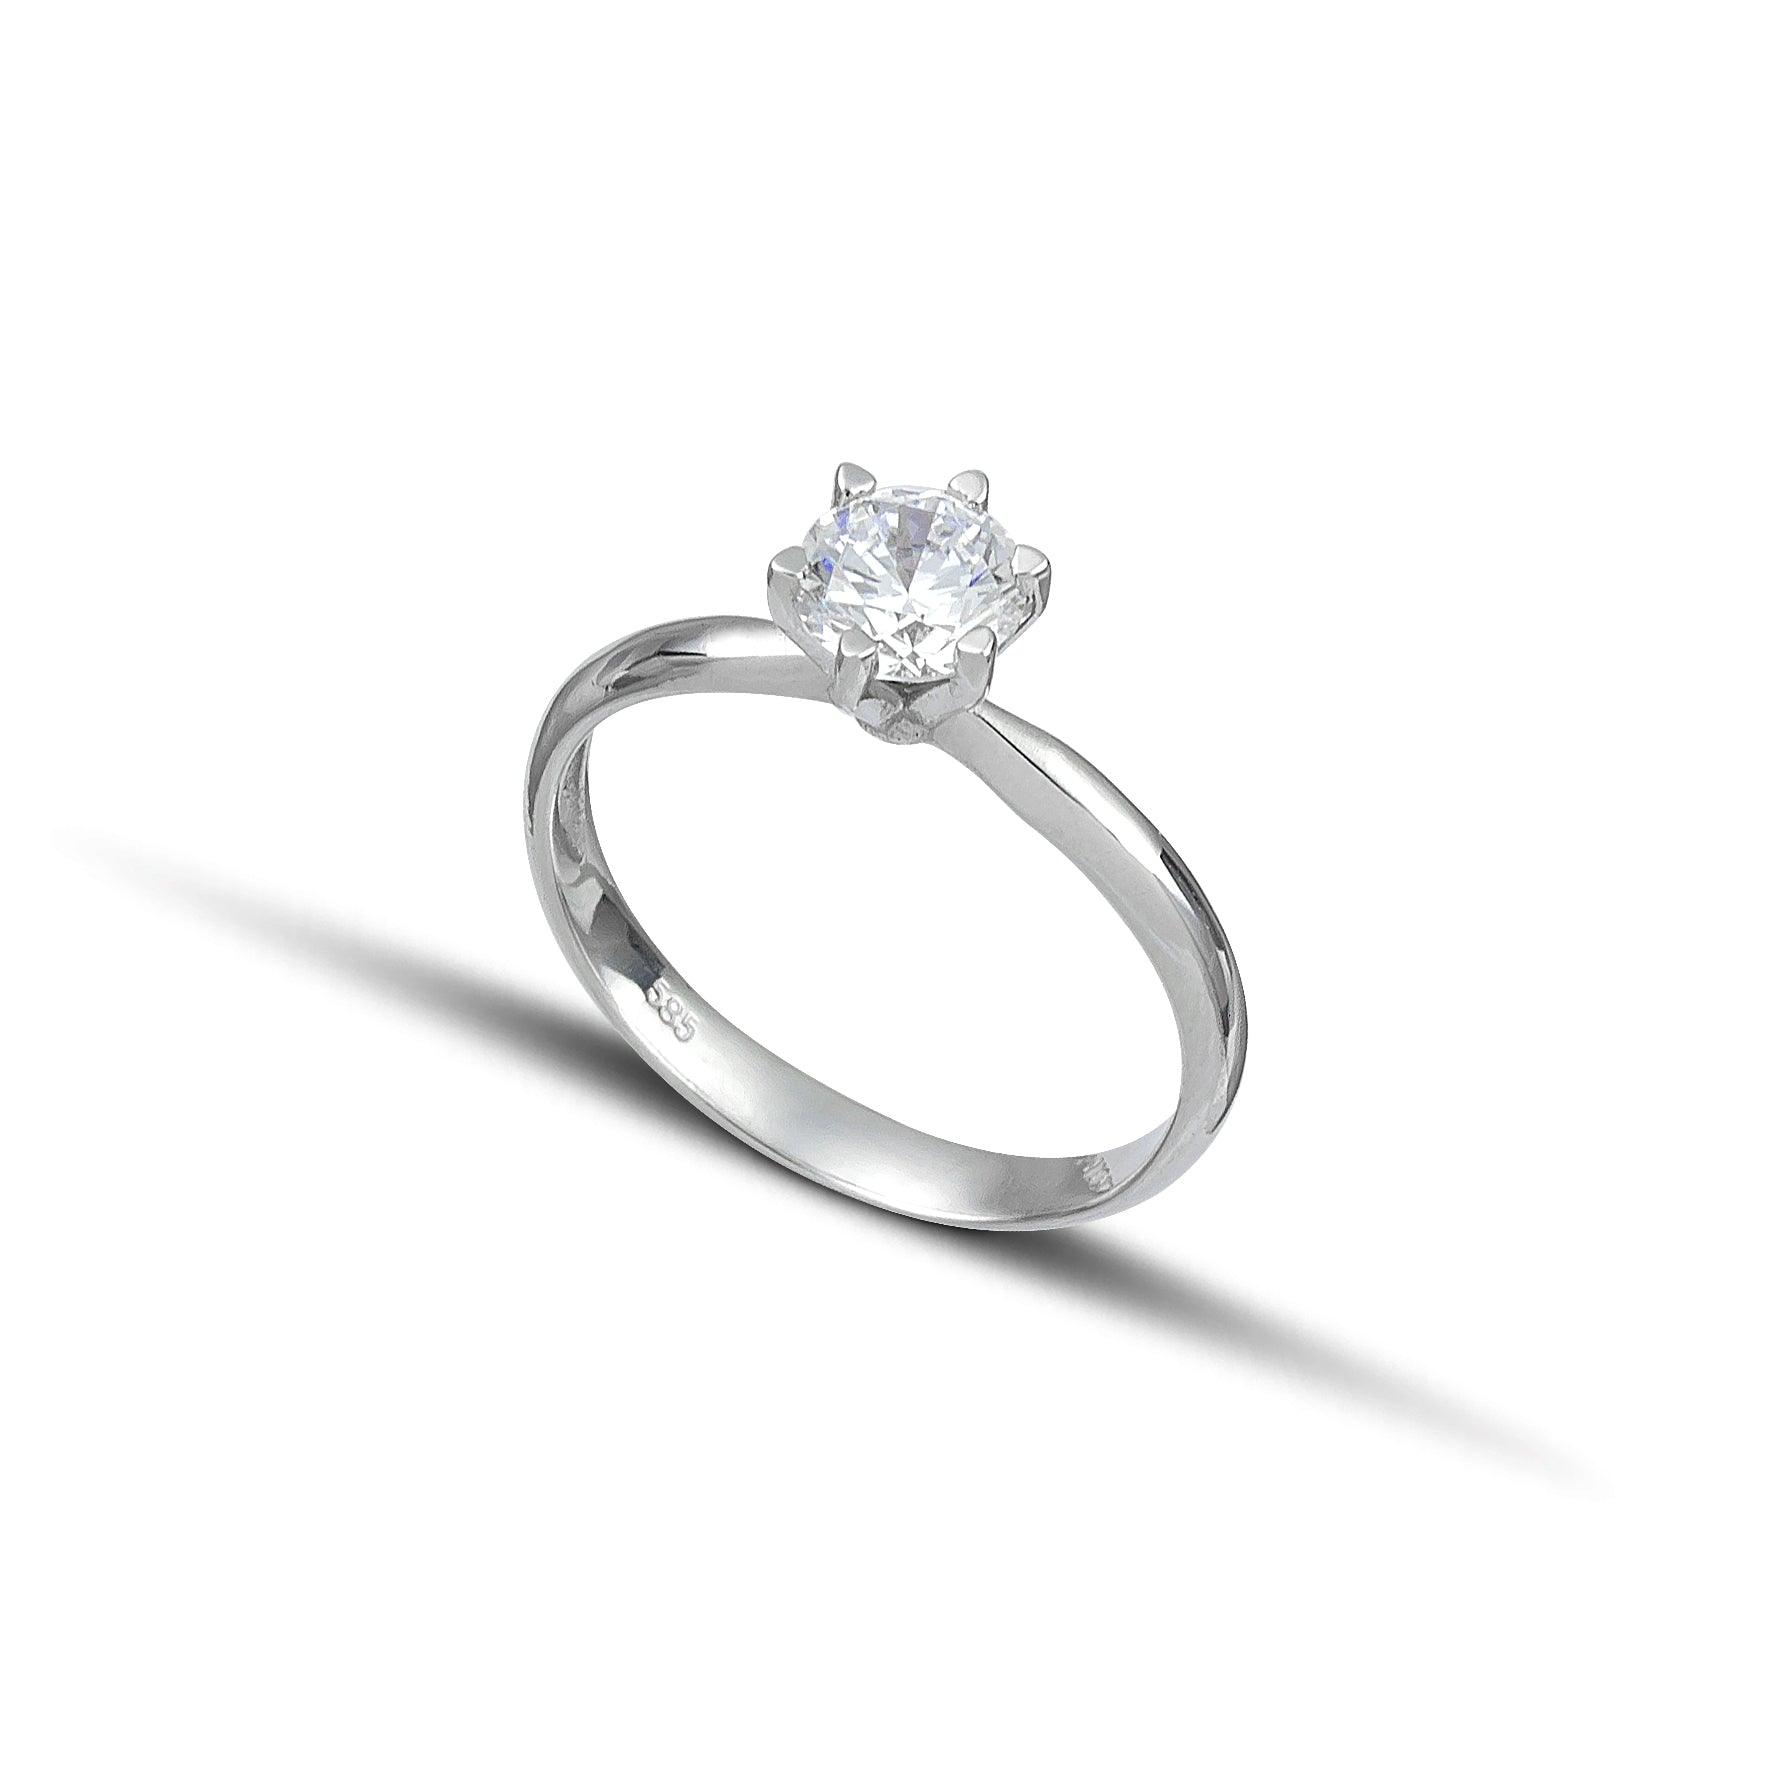 Λευκόχρυσο μονόπετρο δαχτυλίδι με διαμάντι και εξάδοντο καστόνι.